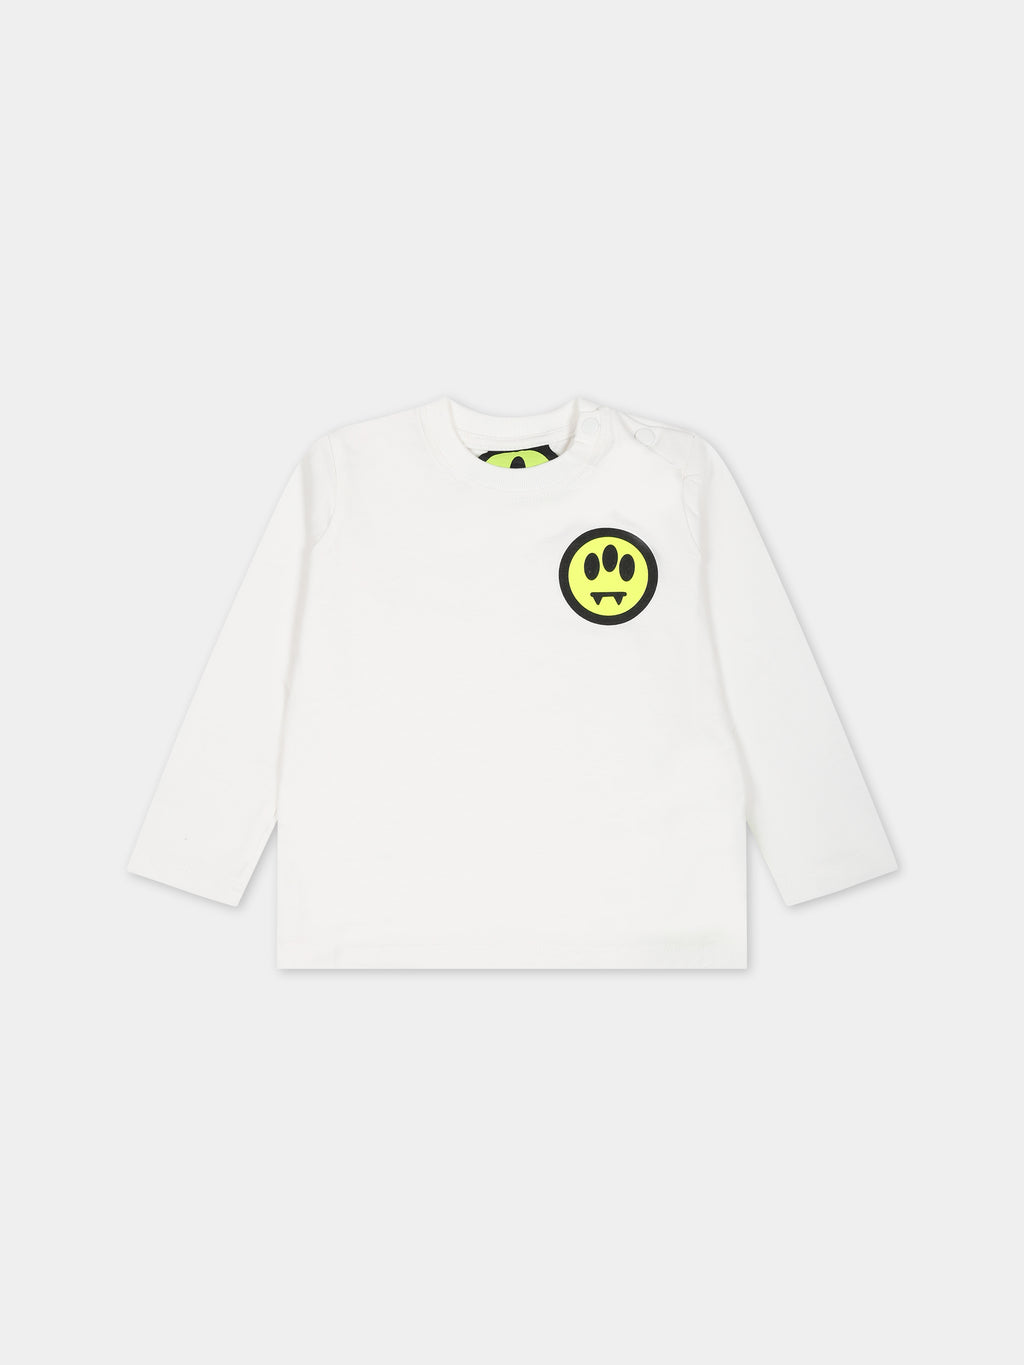 T-shirt blanc pour bébé enfants avec logo et smiley